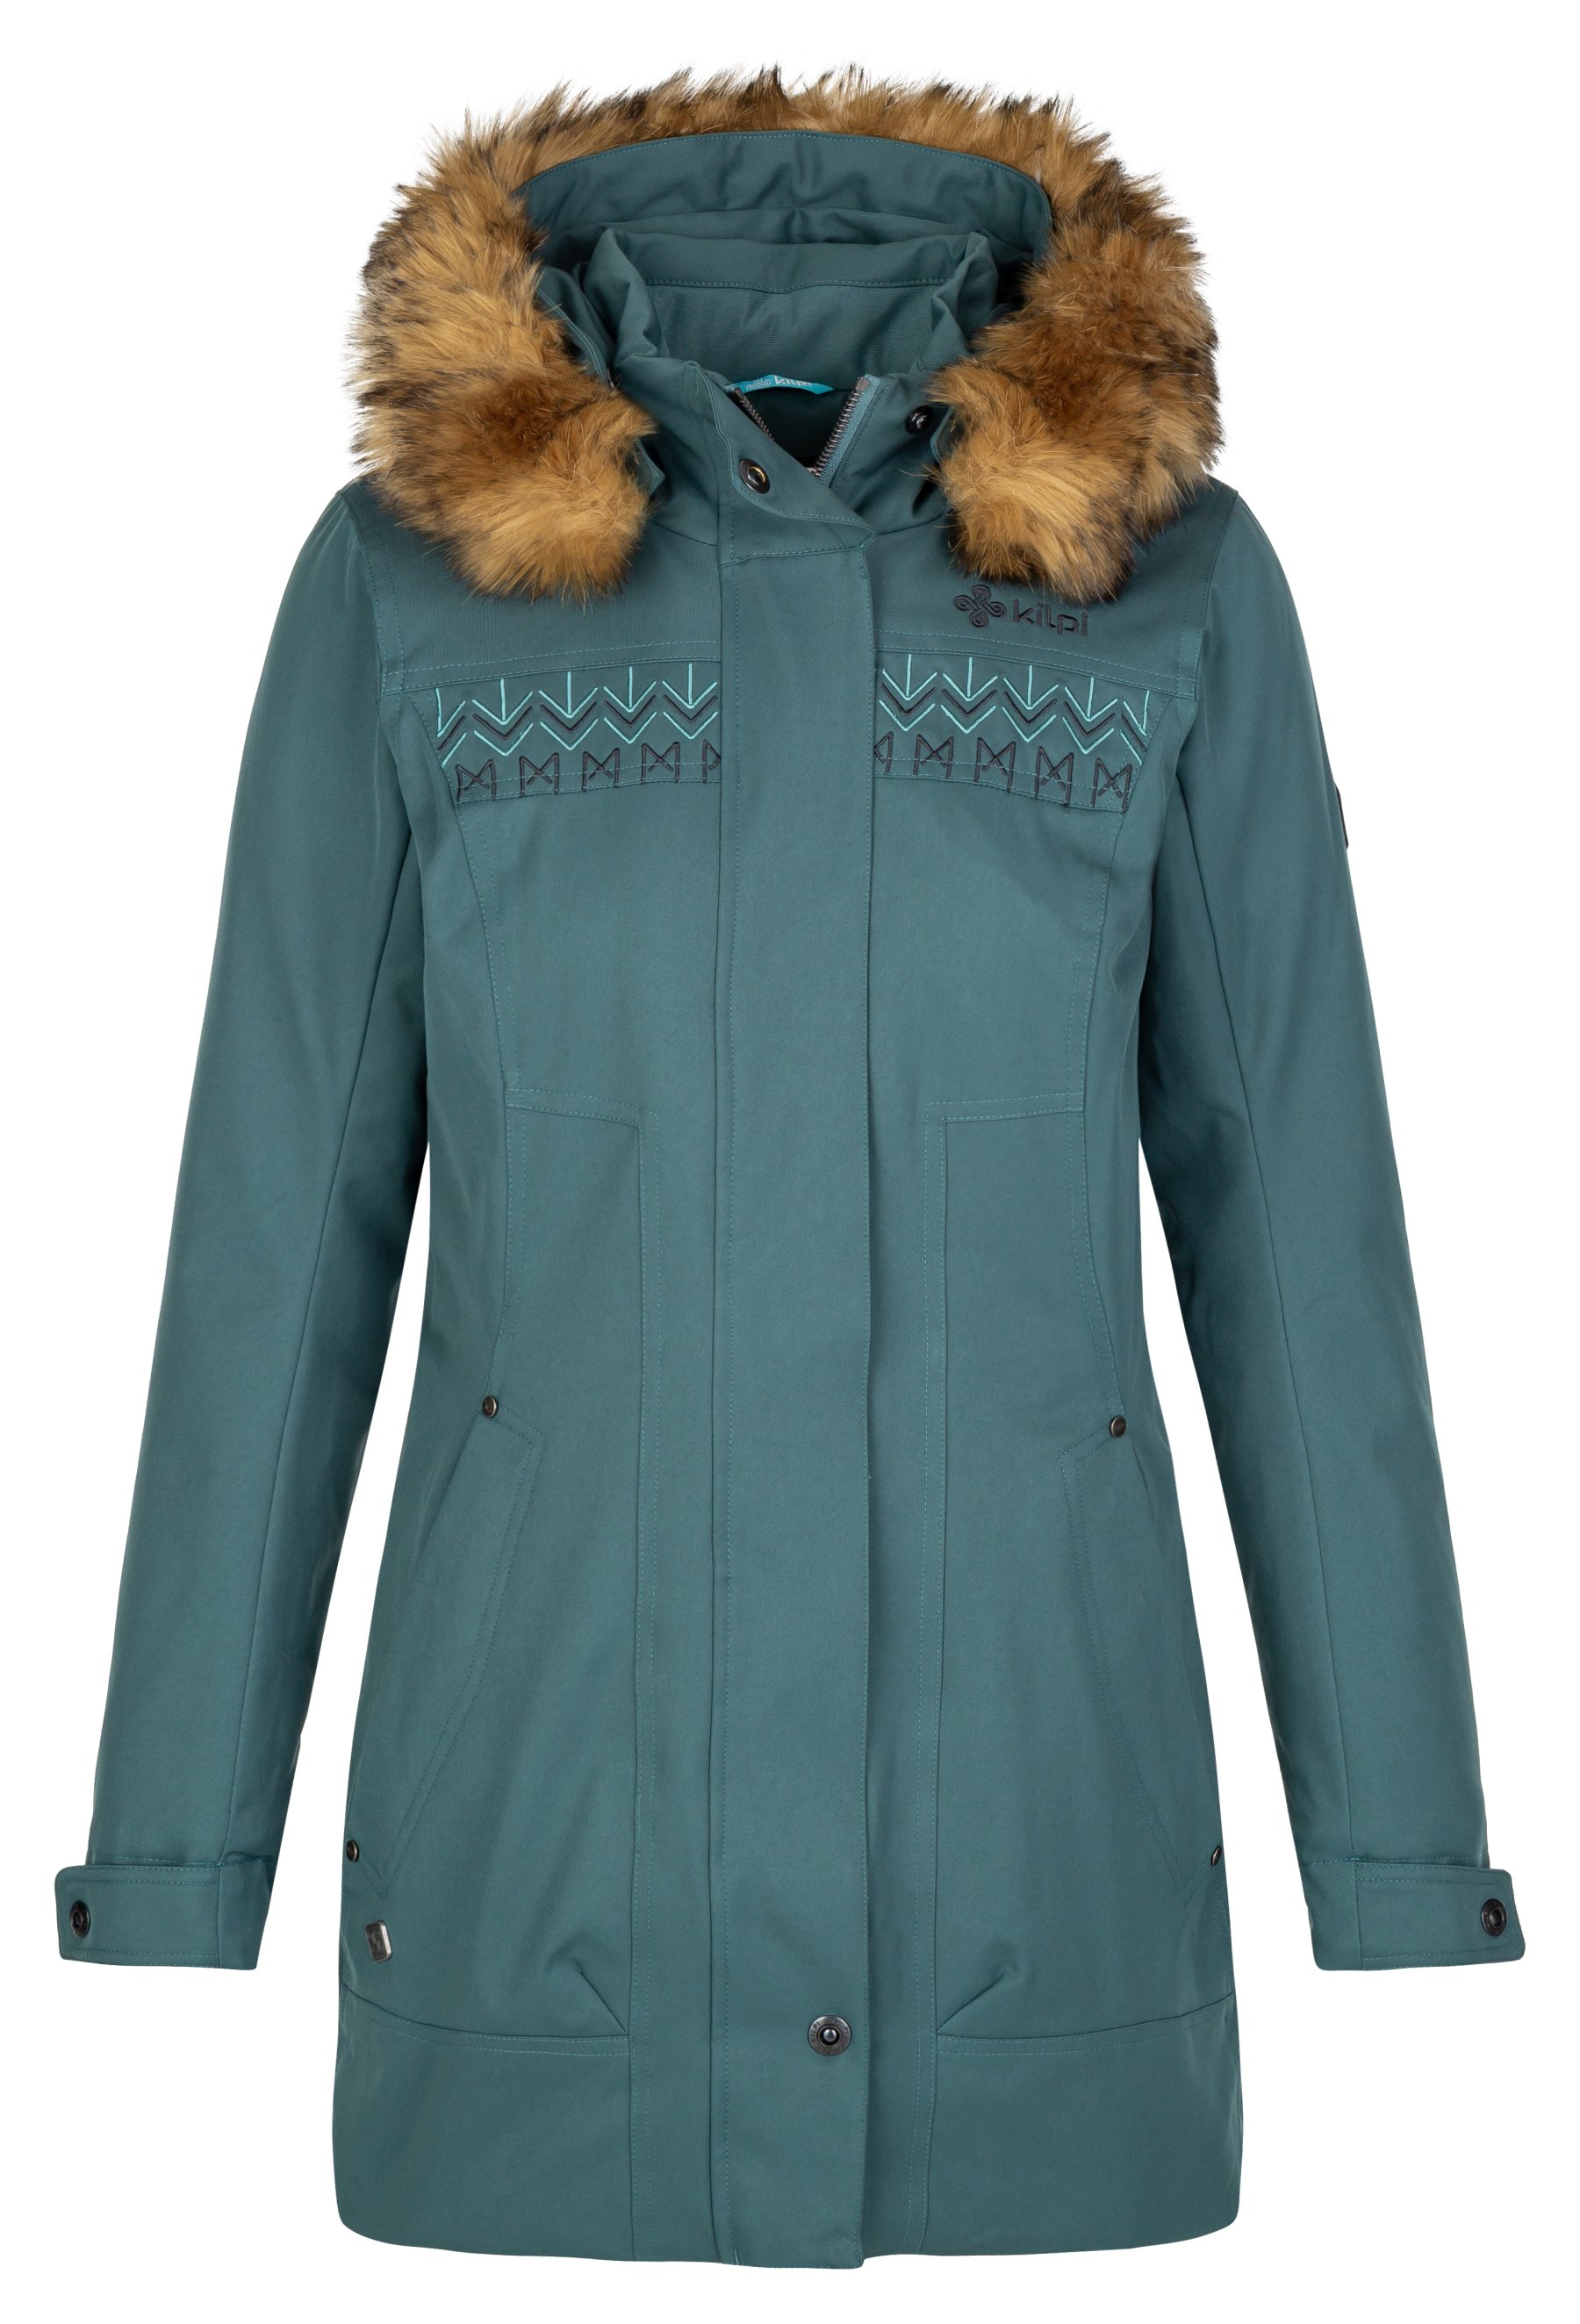 Kilpi dámský zimní kabát Peru-W Barva: tmavě zelená, Velikost: 42